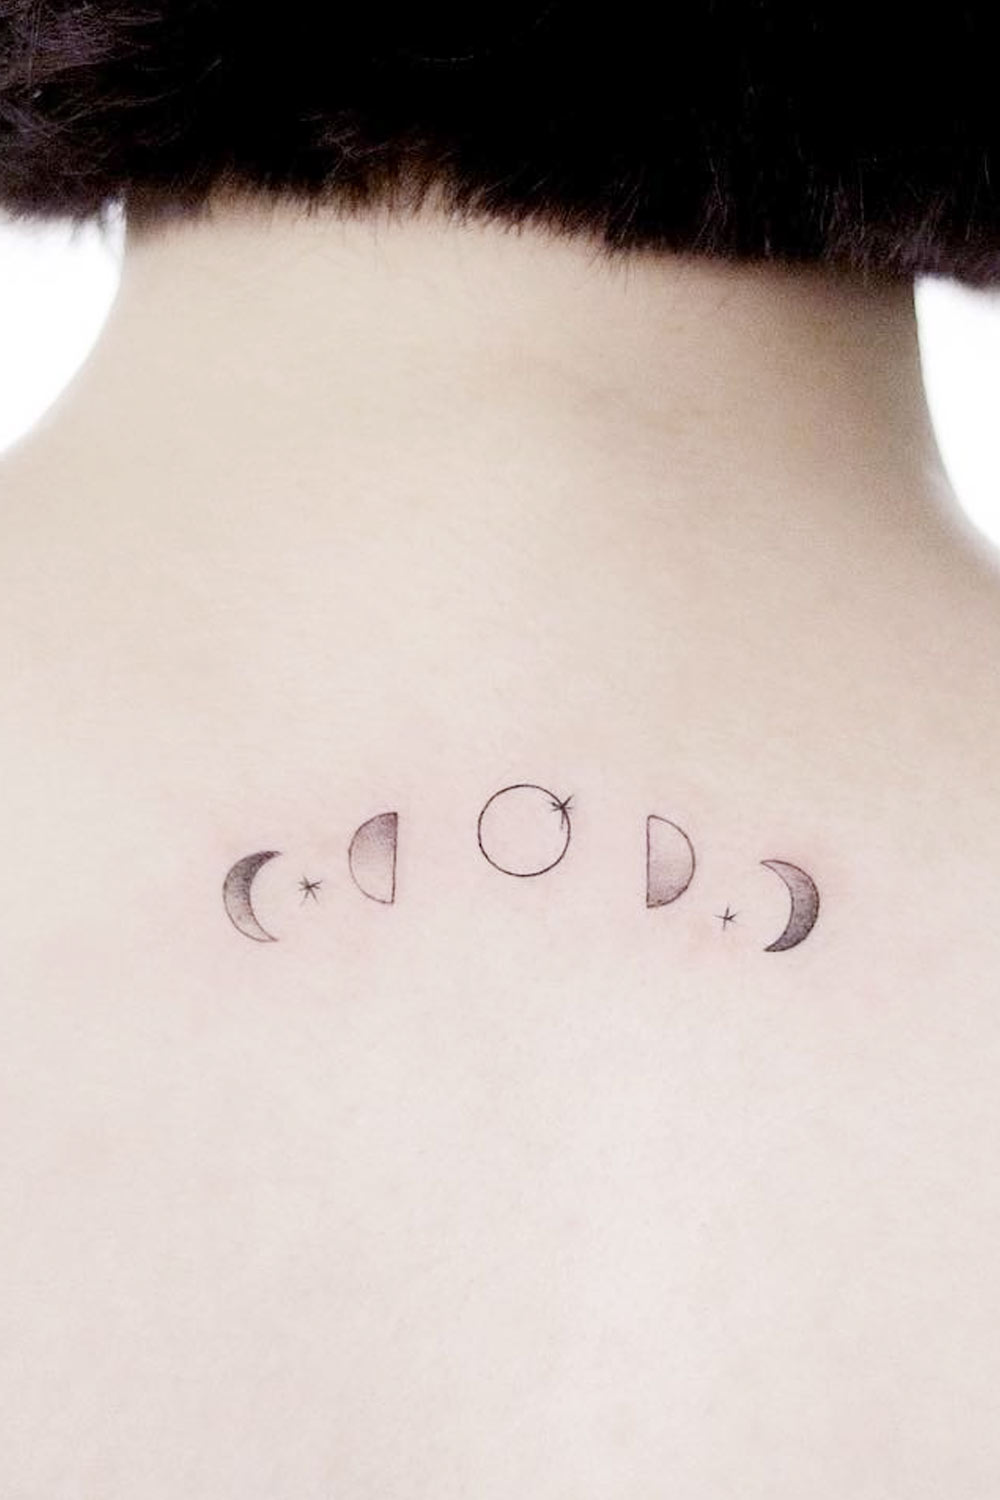 Minimalist Moon Phases Tattoo Design